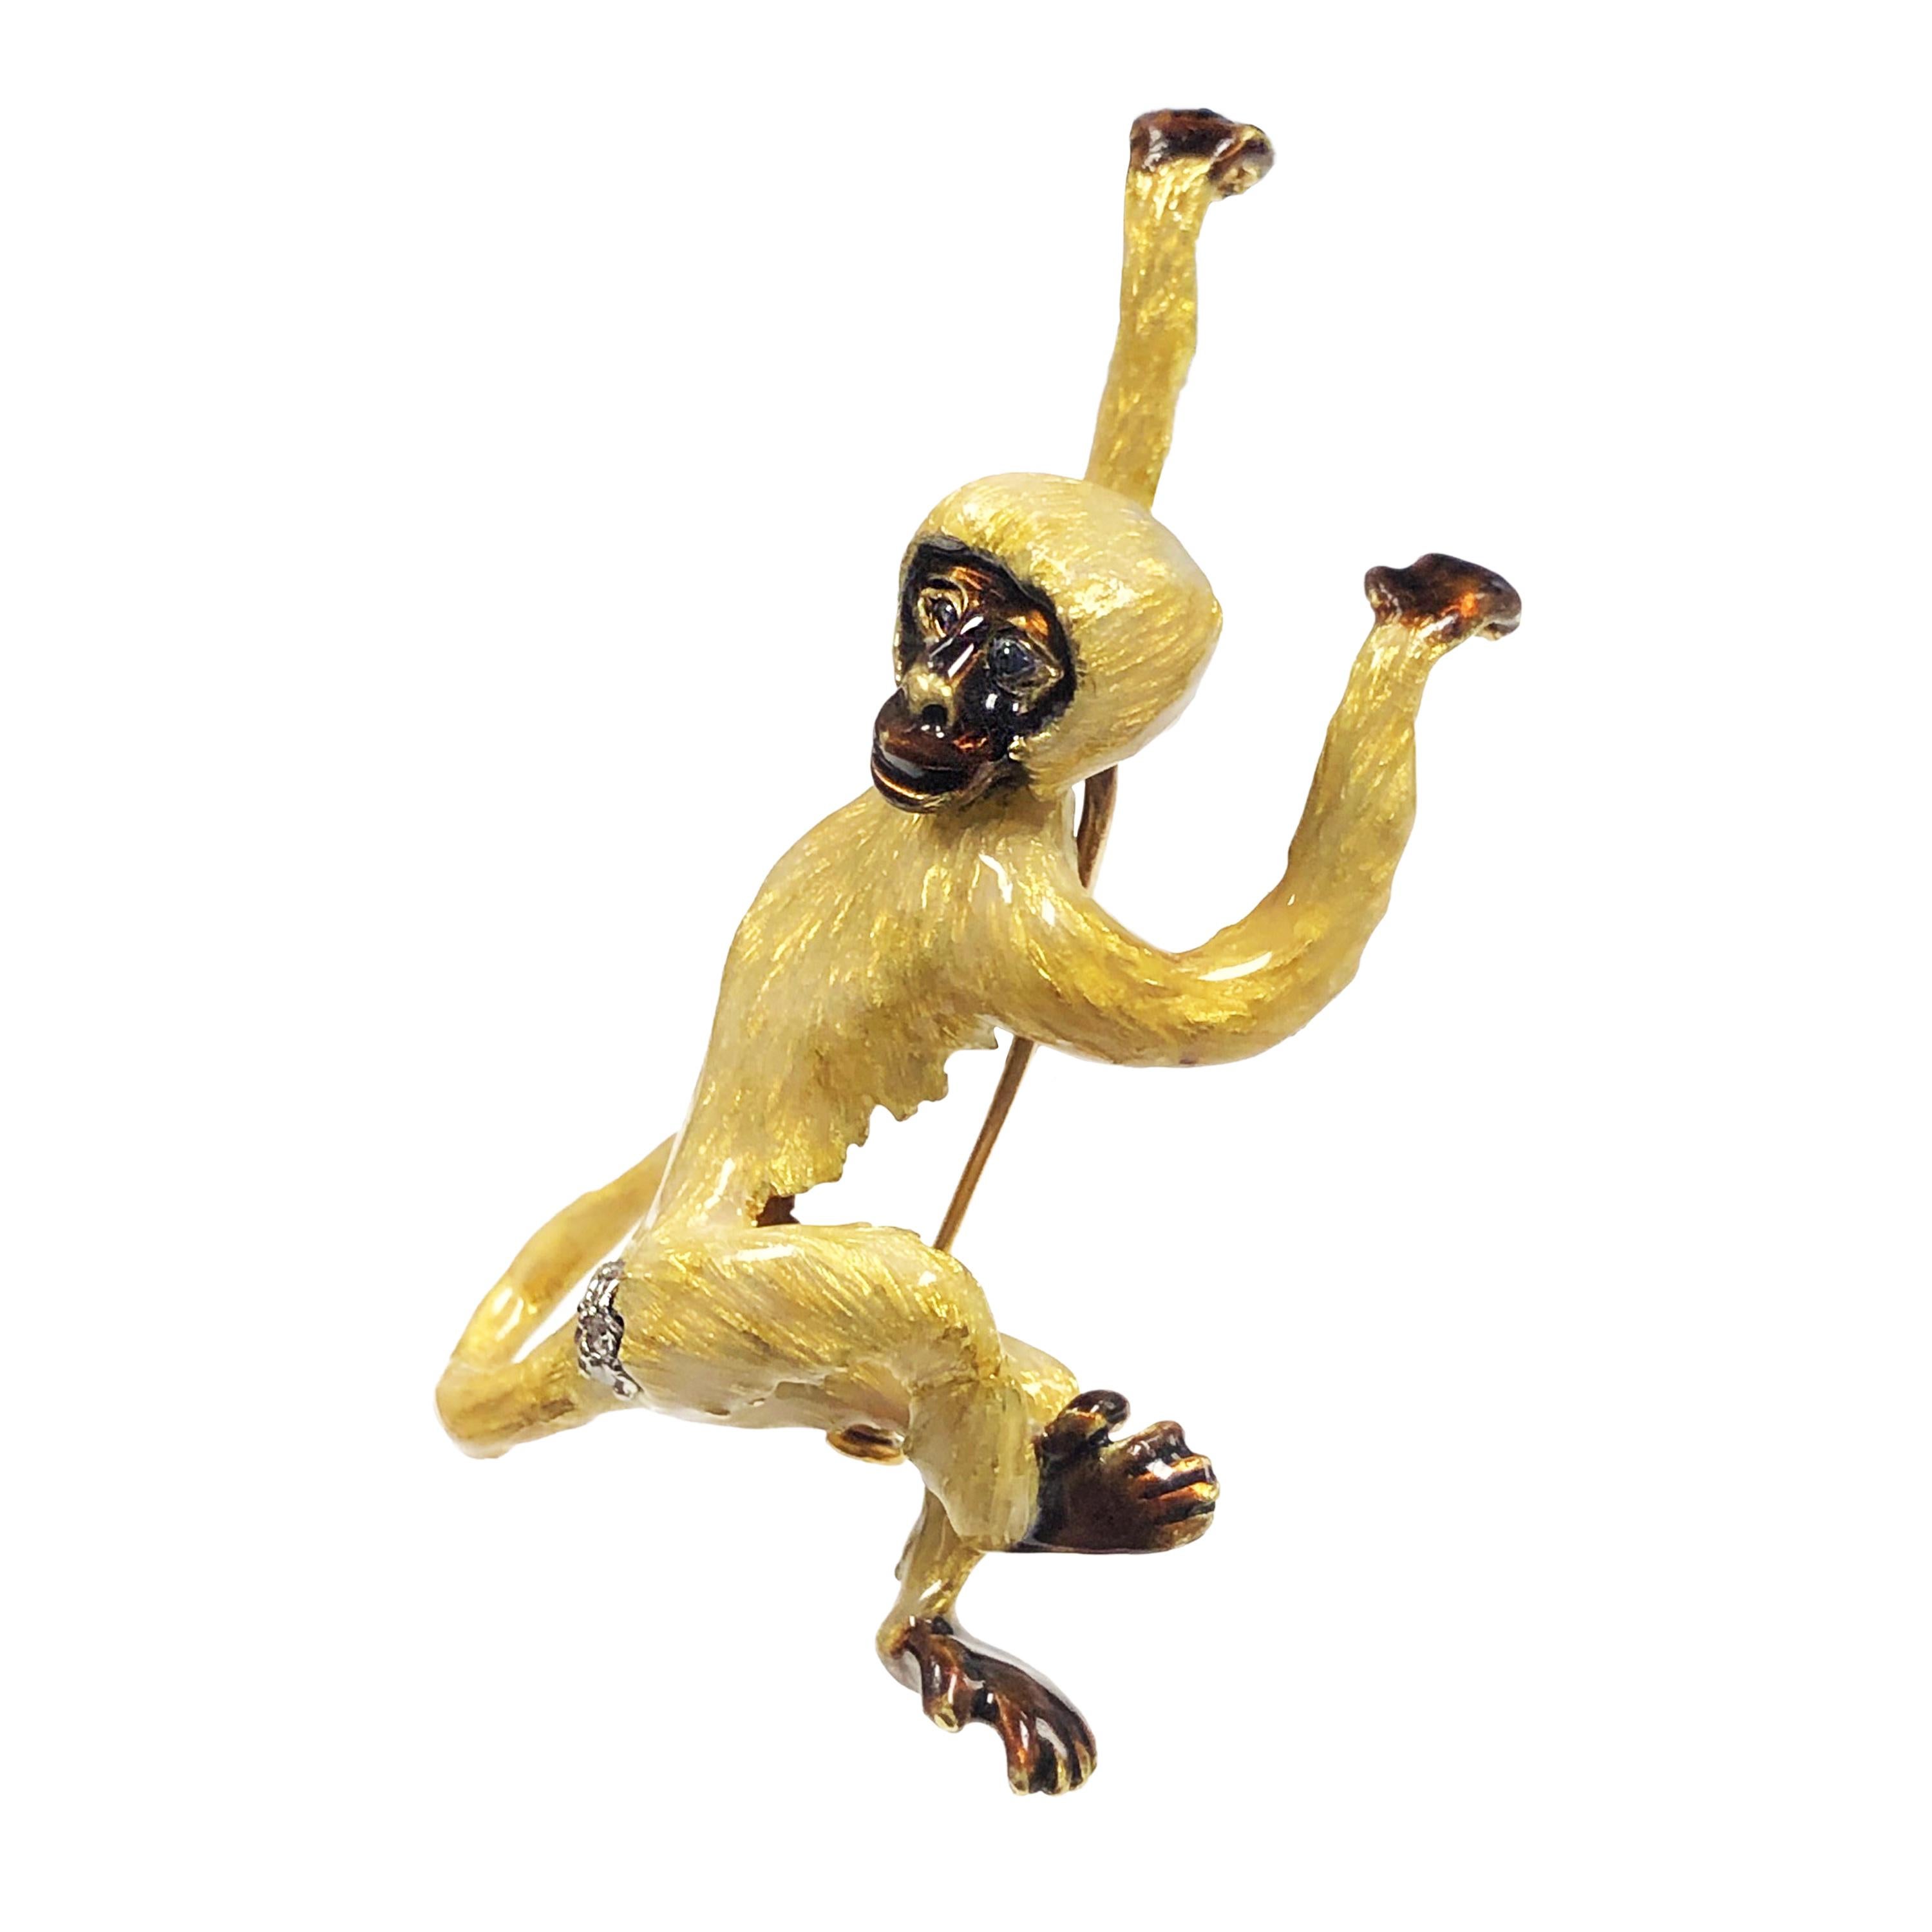 Circa 1970s Very Whimsical Monkey Brooch en or jaune 18K, mesurant 2 1/4 pouces de longueur X 1 3/8 pouce de largeur. Cette pièce détaillée est entièrement finie en émail guilloché jaune clair, avec des mains et des pieds bruns et un visage brun.